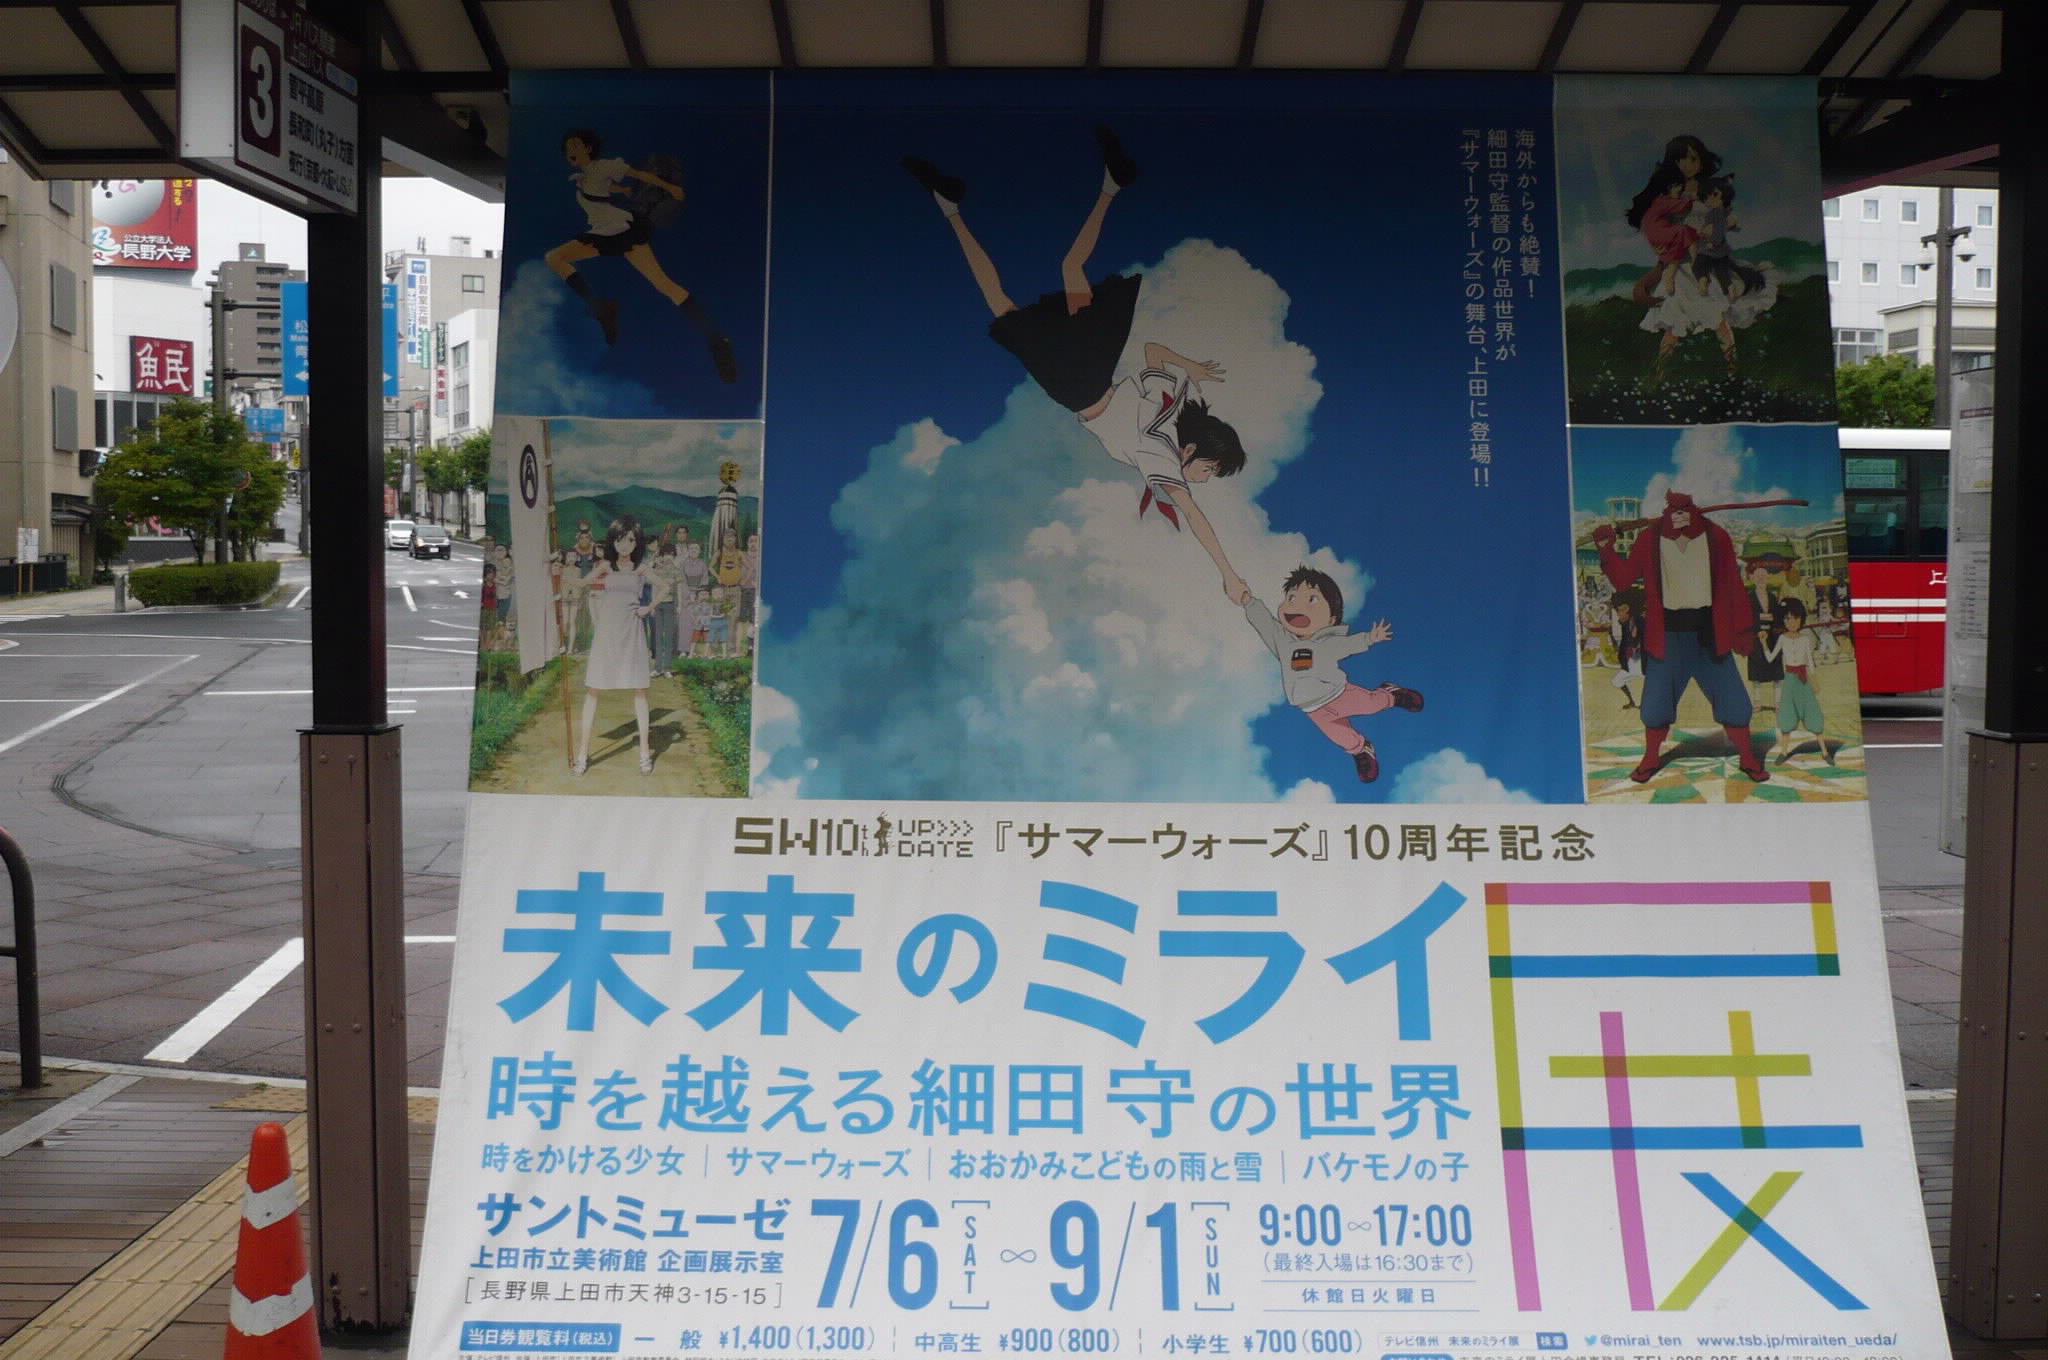 信州上田が舞台のアニメーション映画 サマーウォーズ のラッピング自販機をさがそう 6台目 いよいよ本日テレビ放映 じょうしょう気流